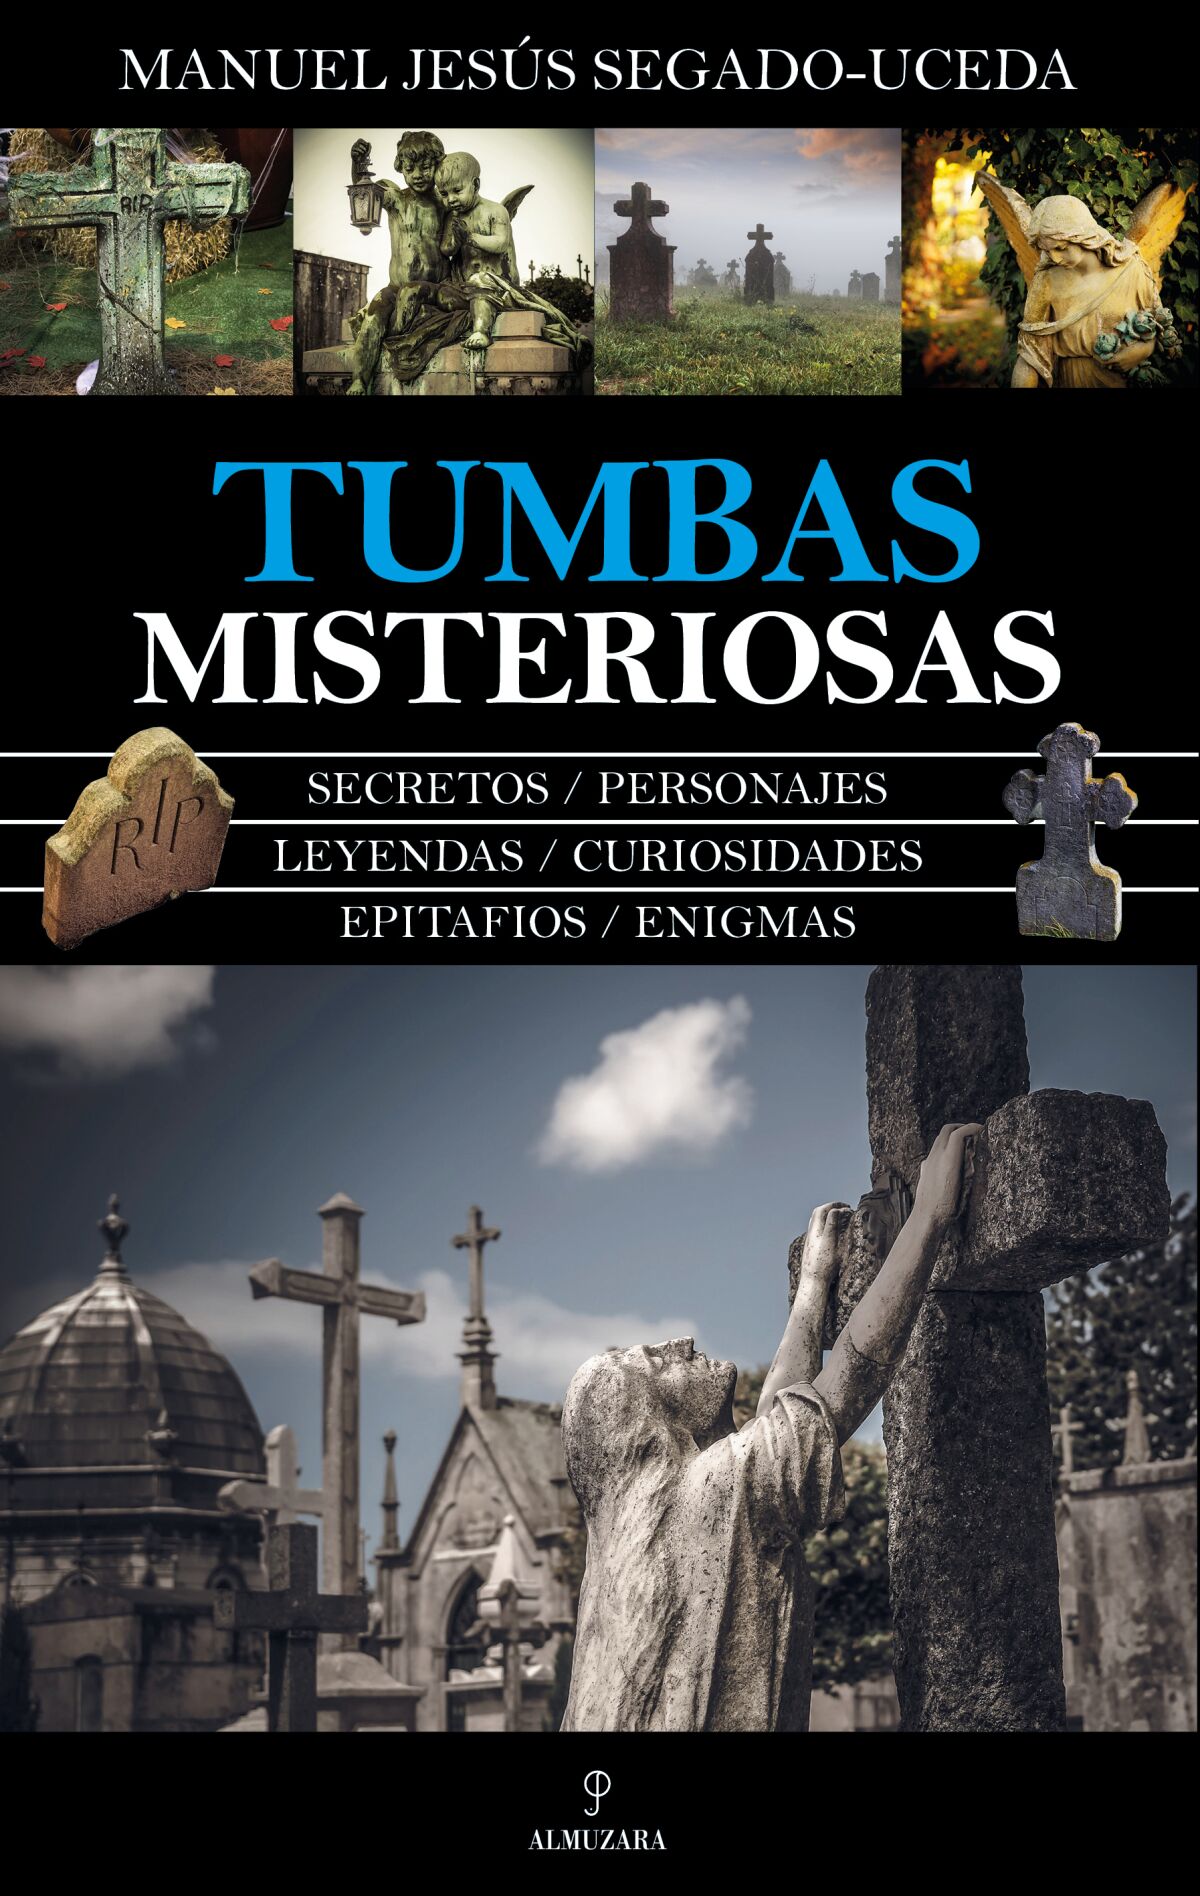 Portada del libro Tumbas misteriosas. Foto: Almuzara.